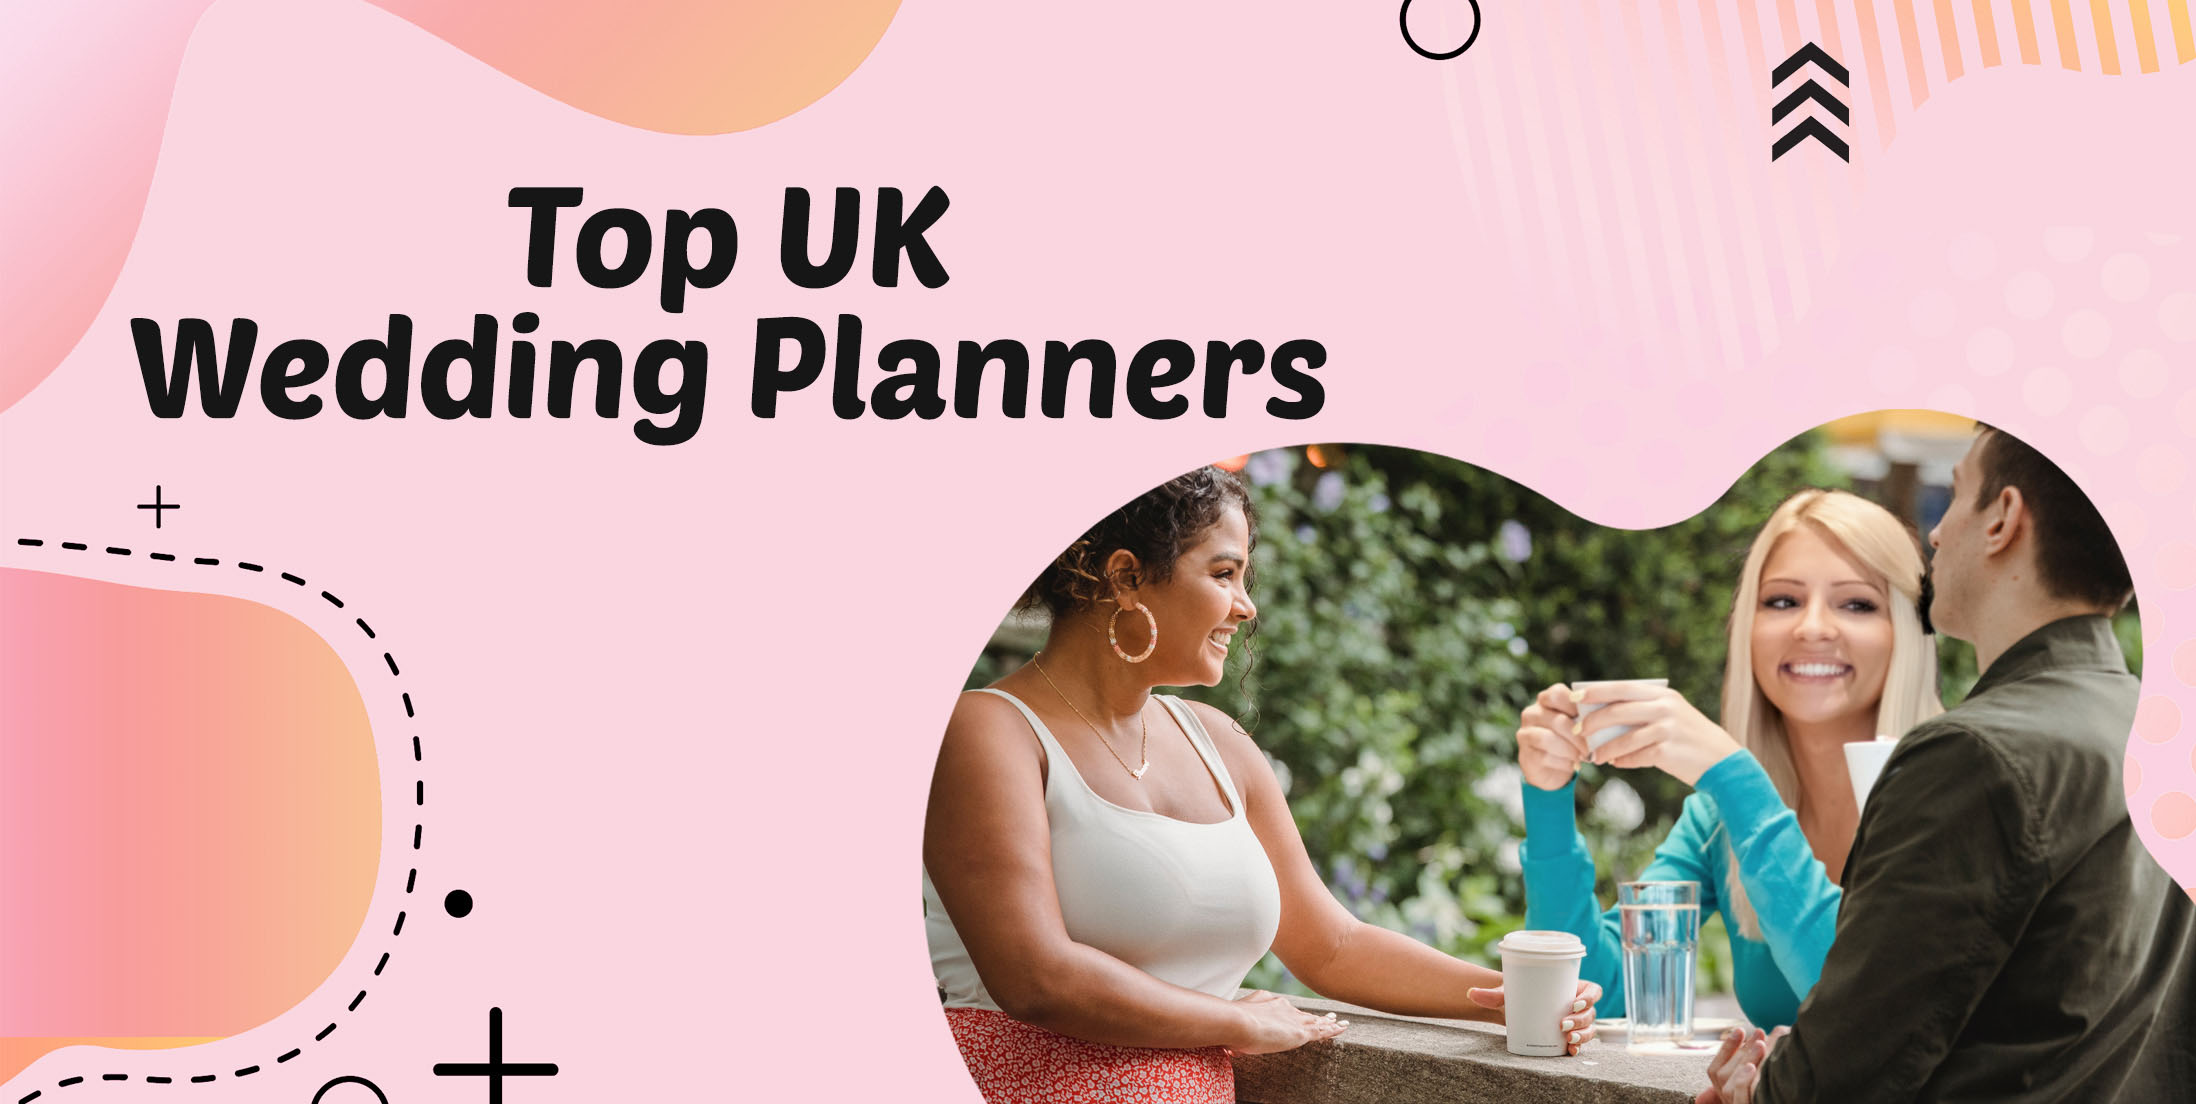 Top UK Wedding Planners